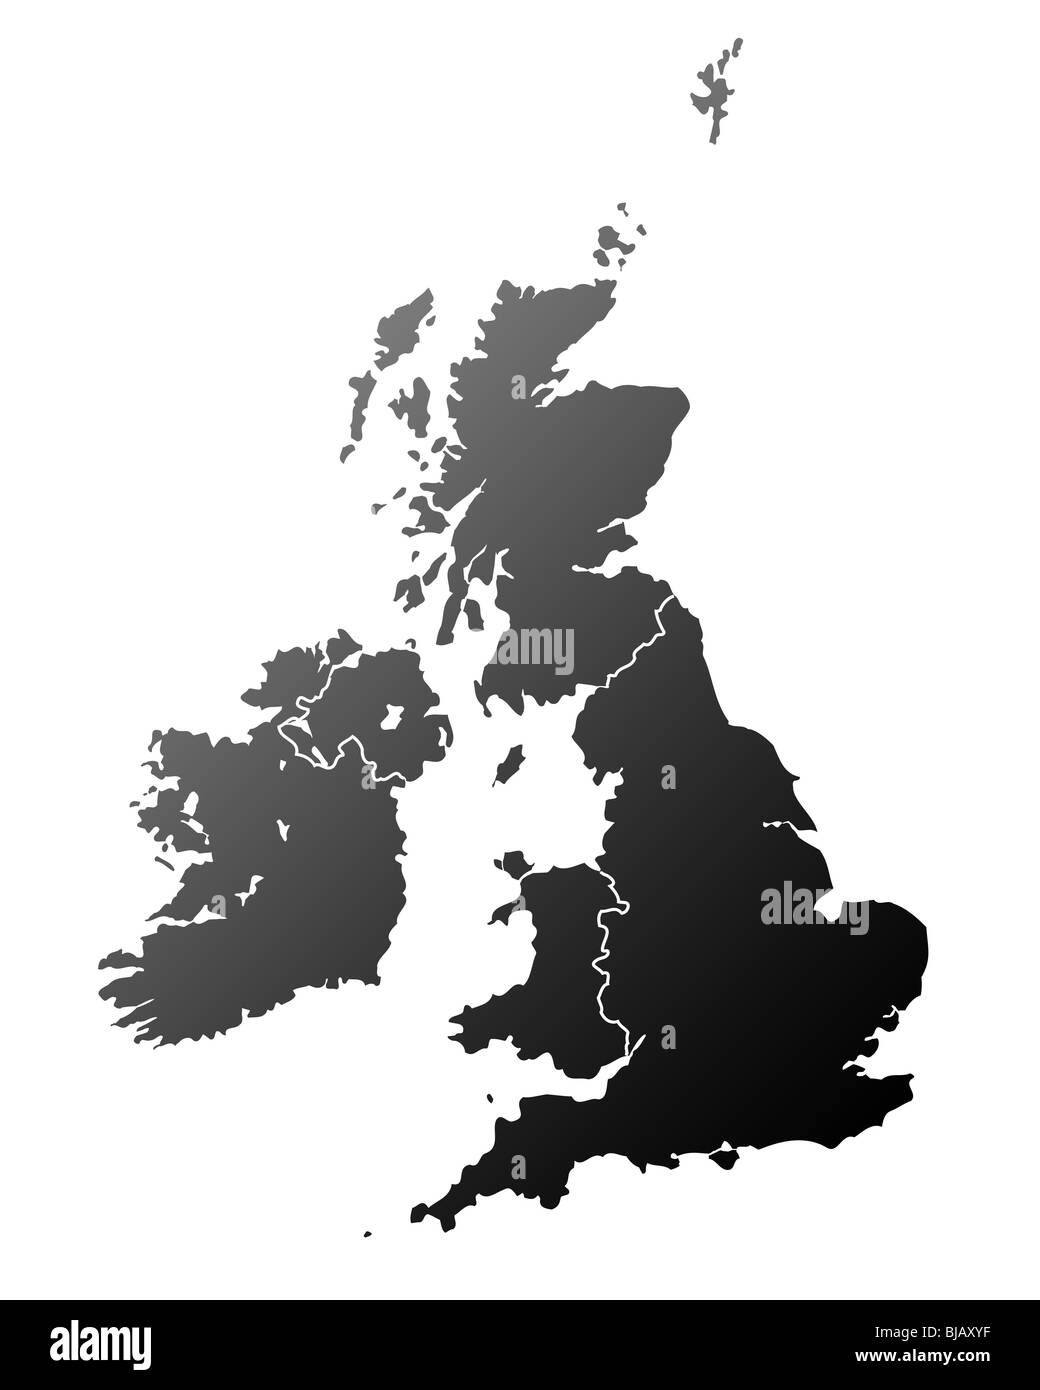 La silhouette du plan de Royaume-Uni et Irlande, isolé sur fond blanc. Banque D'Images